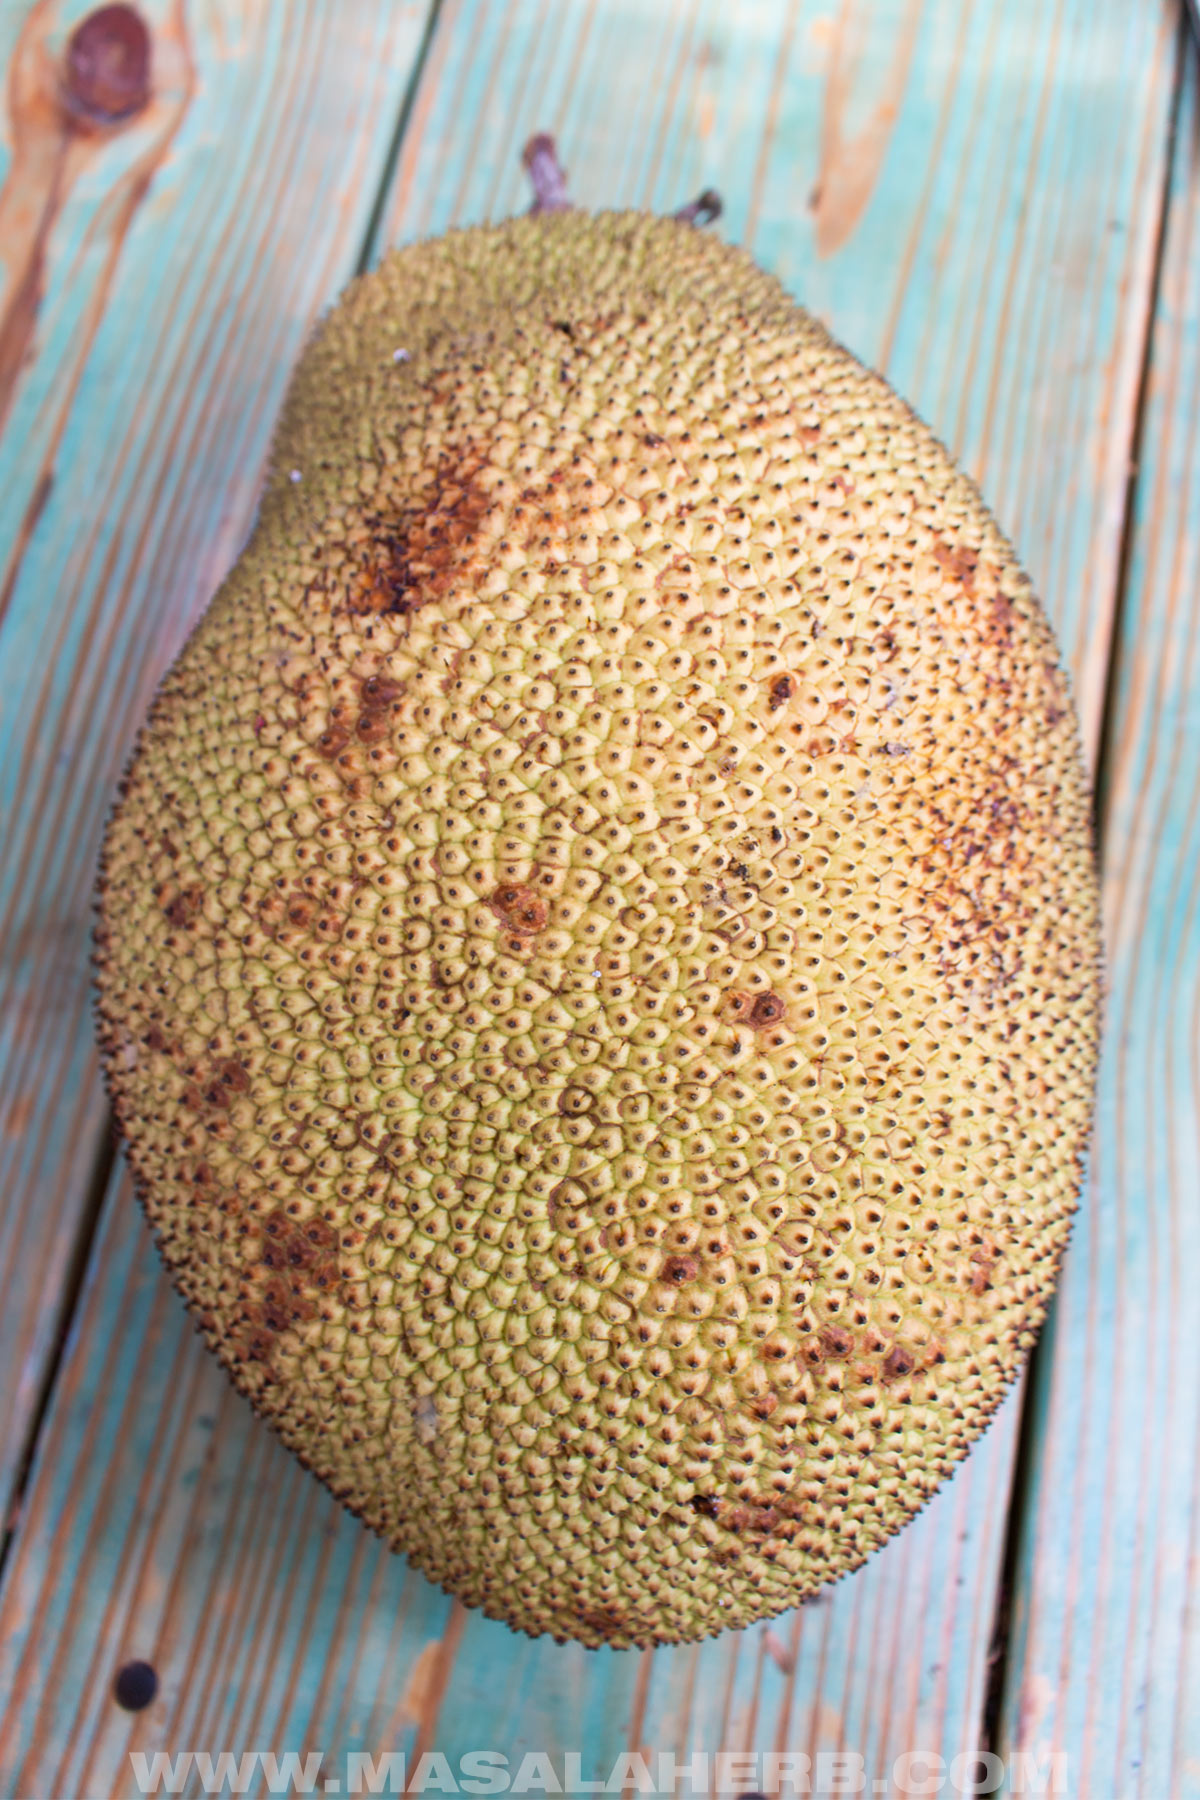 ripe whole medium sized jackfruit